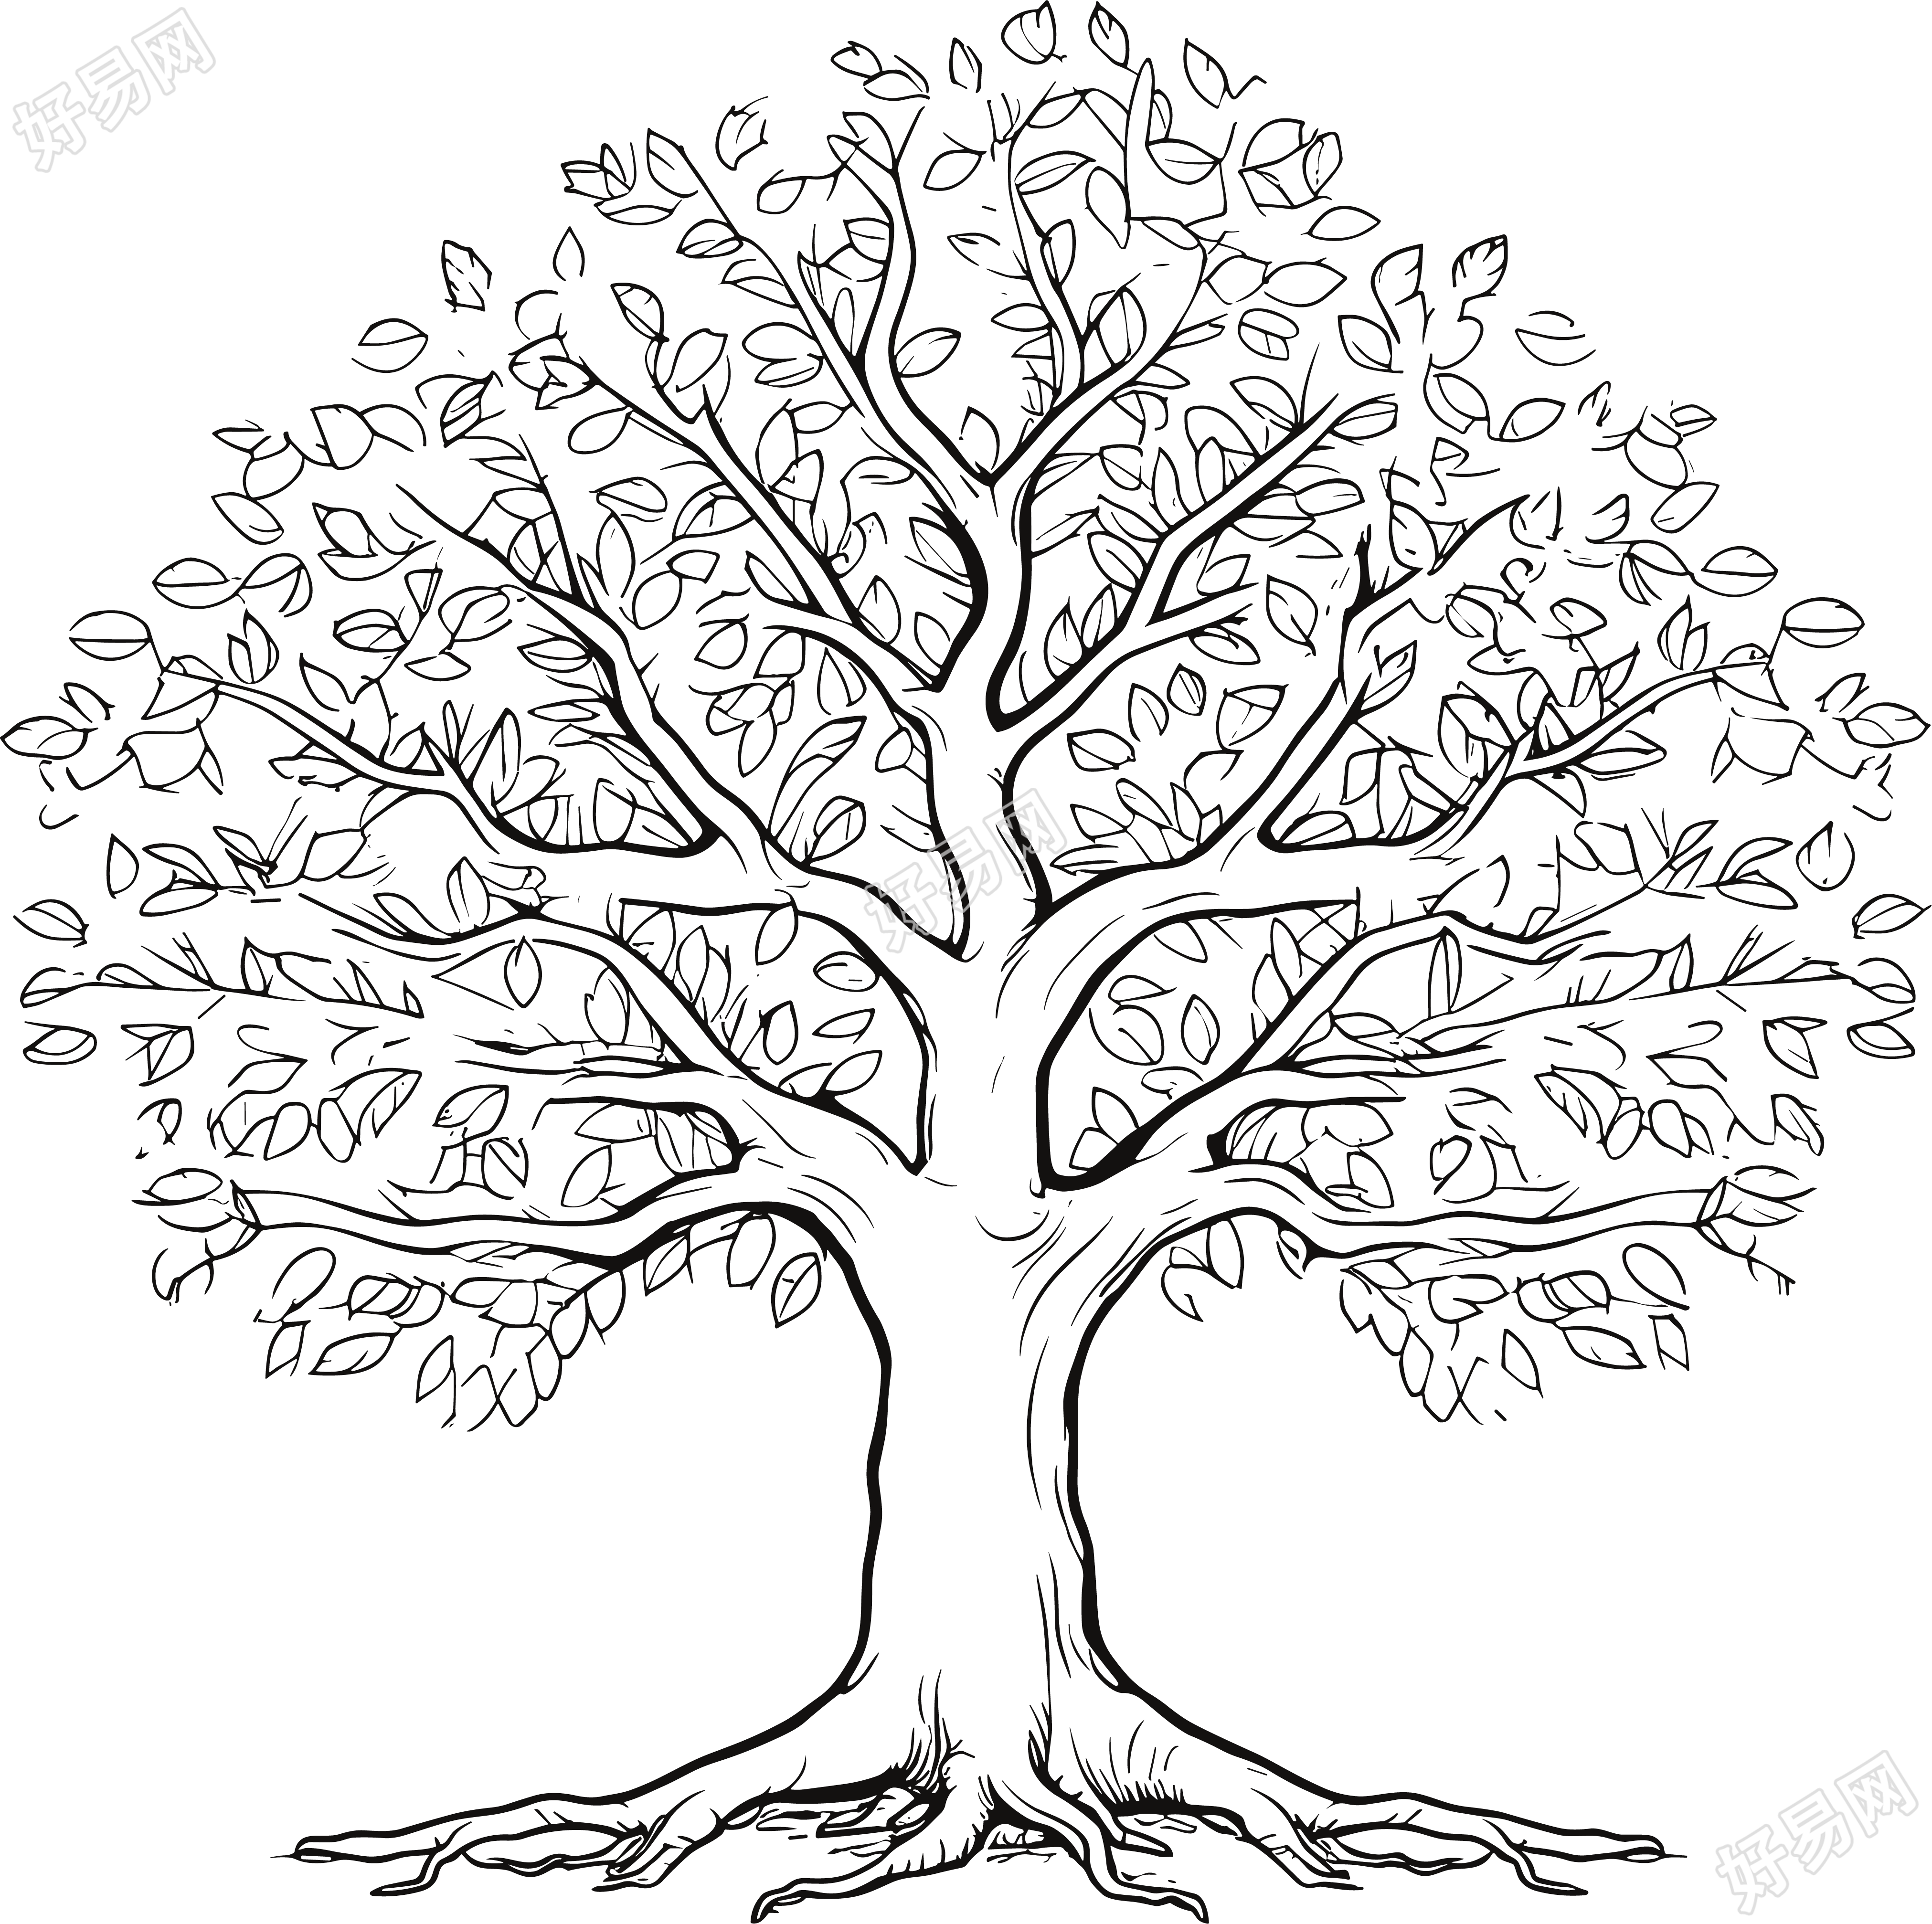 大树枝与叶的黑白插画设计素材